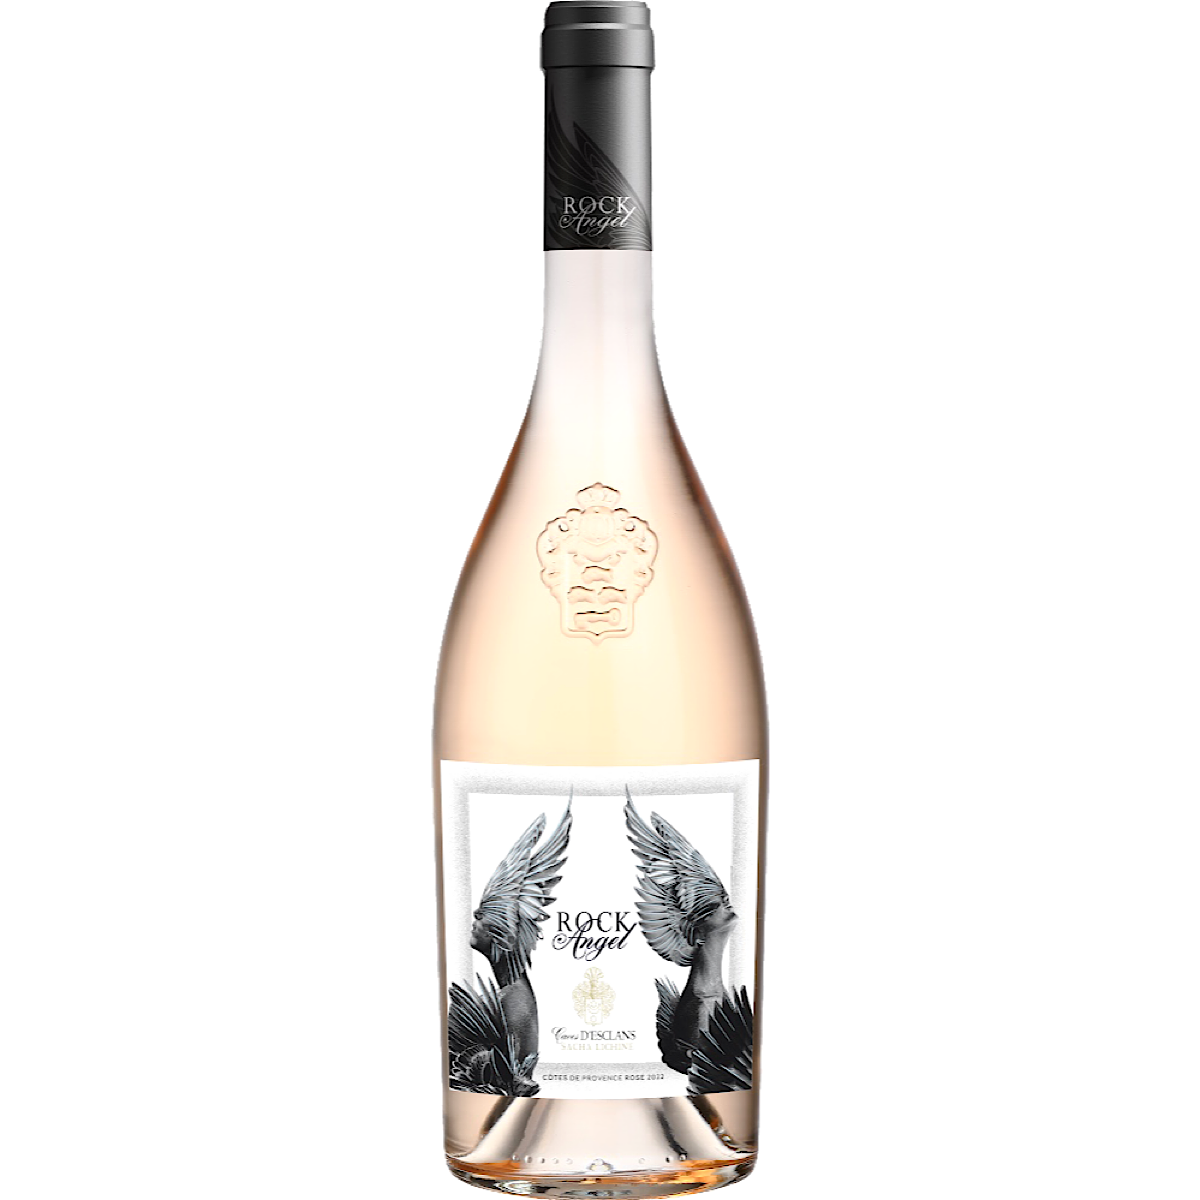 Rock Angel Cotes de Provence Rose Wine 75CL